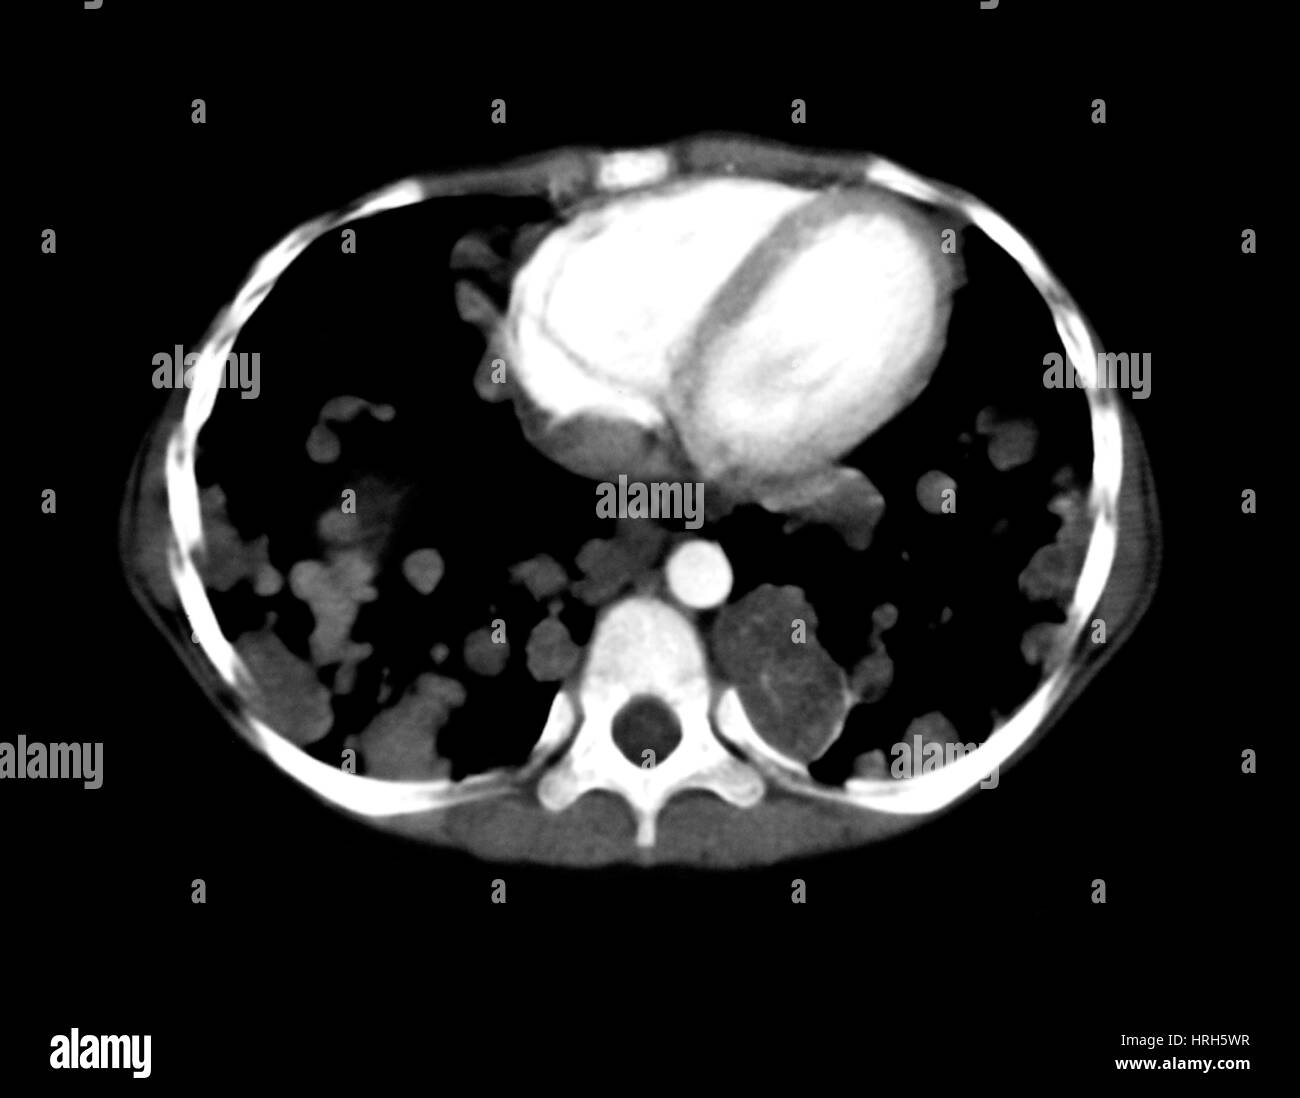 Enfermedad metastásica de los pulmones Foto de stock